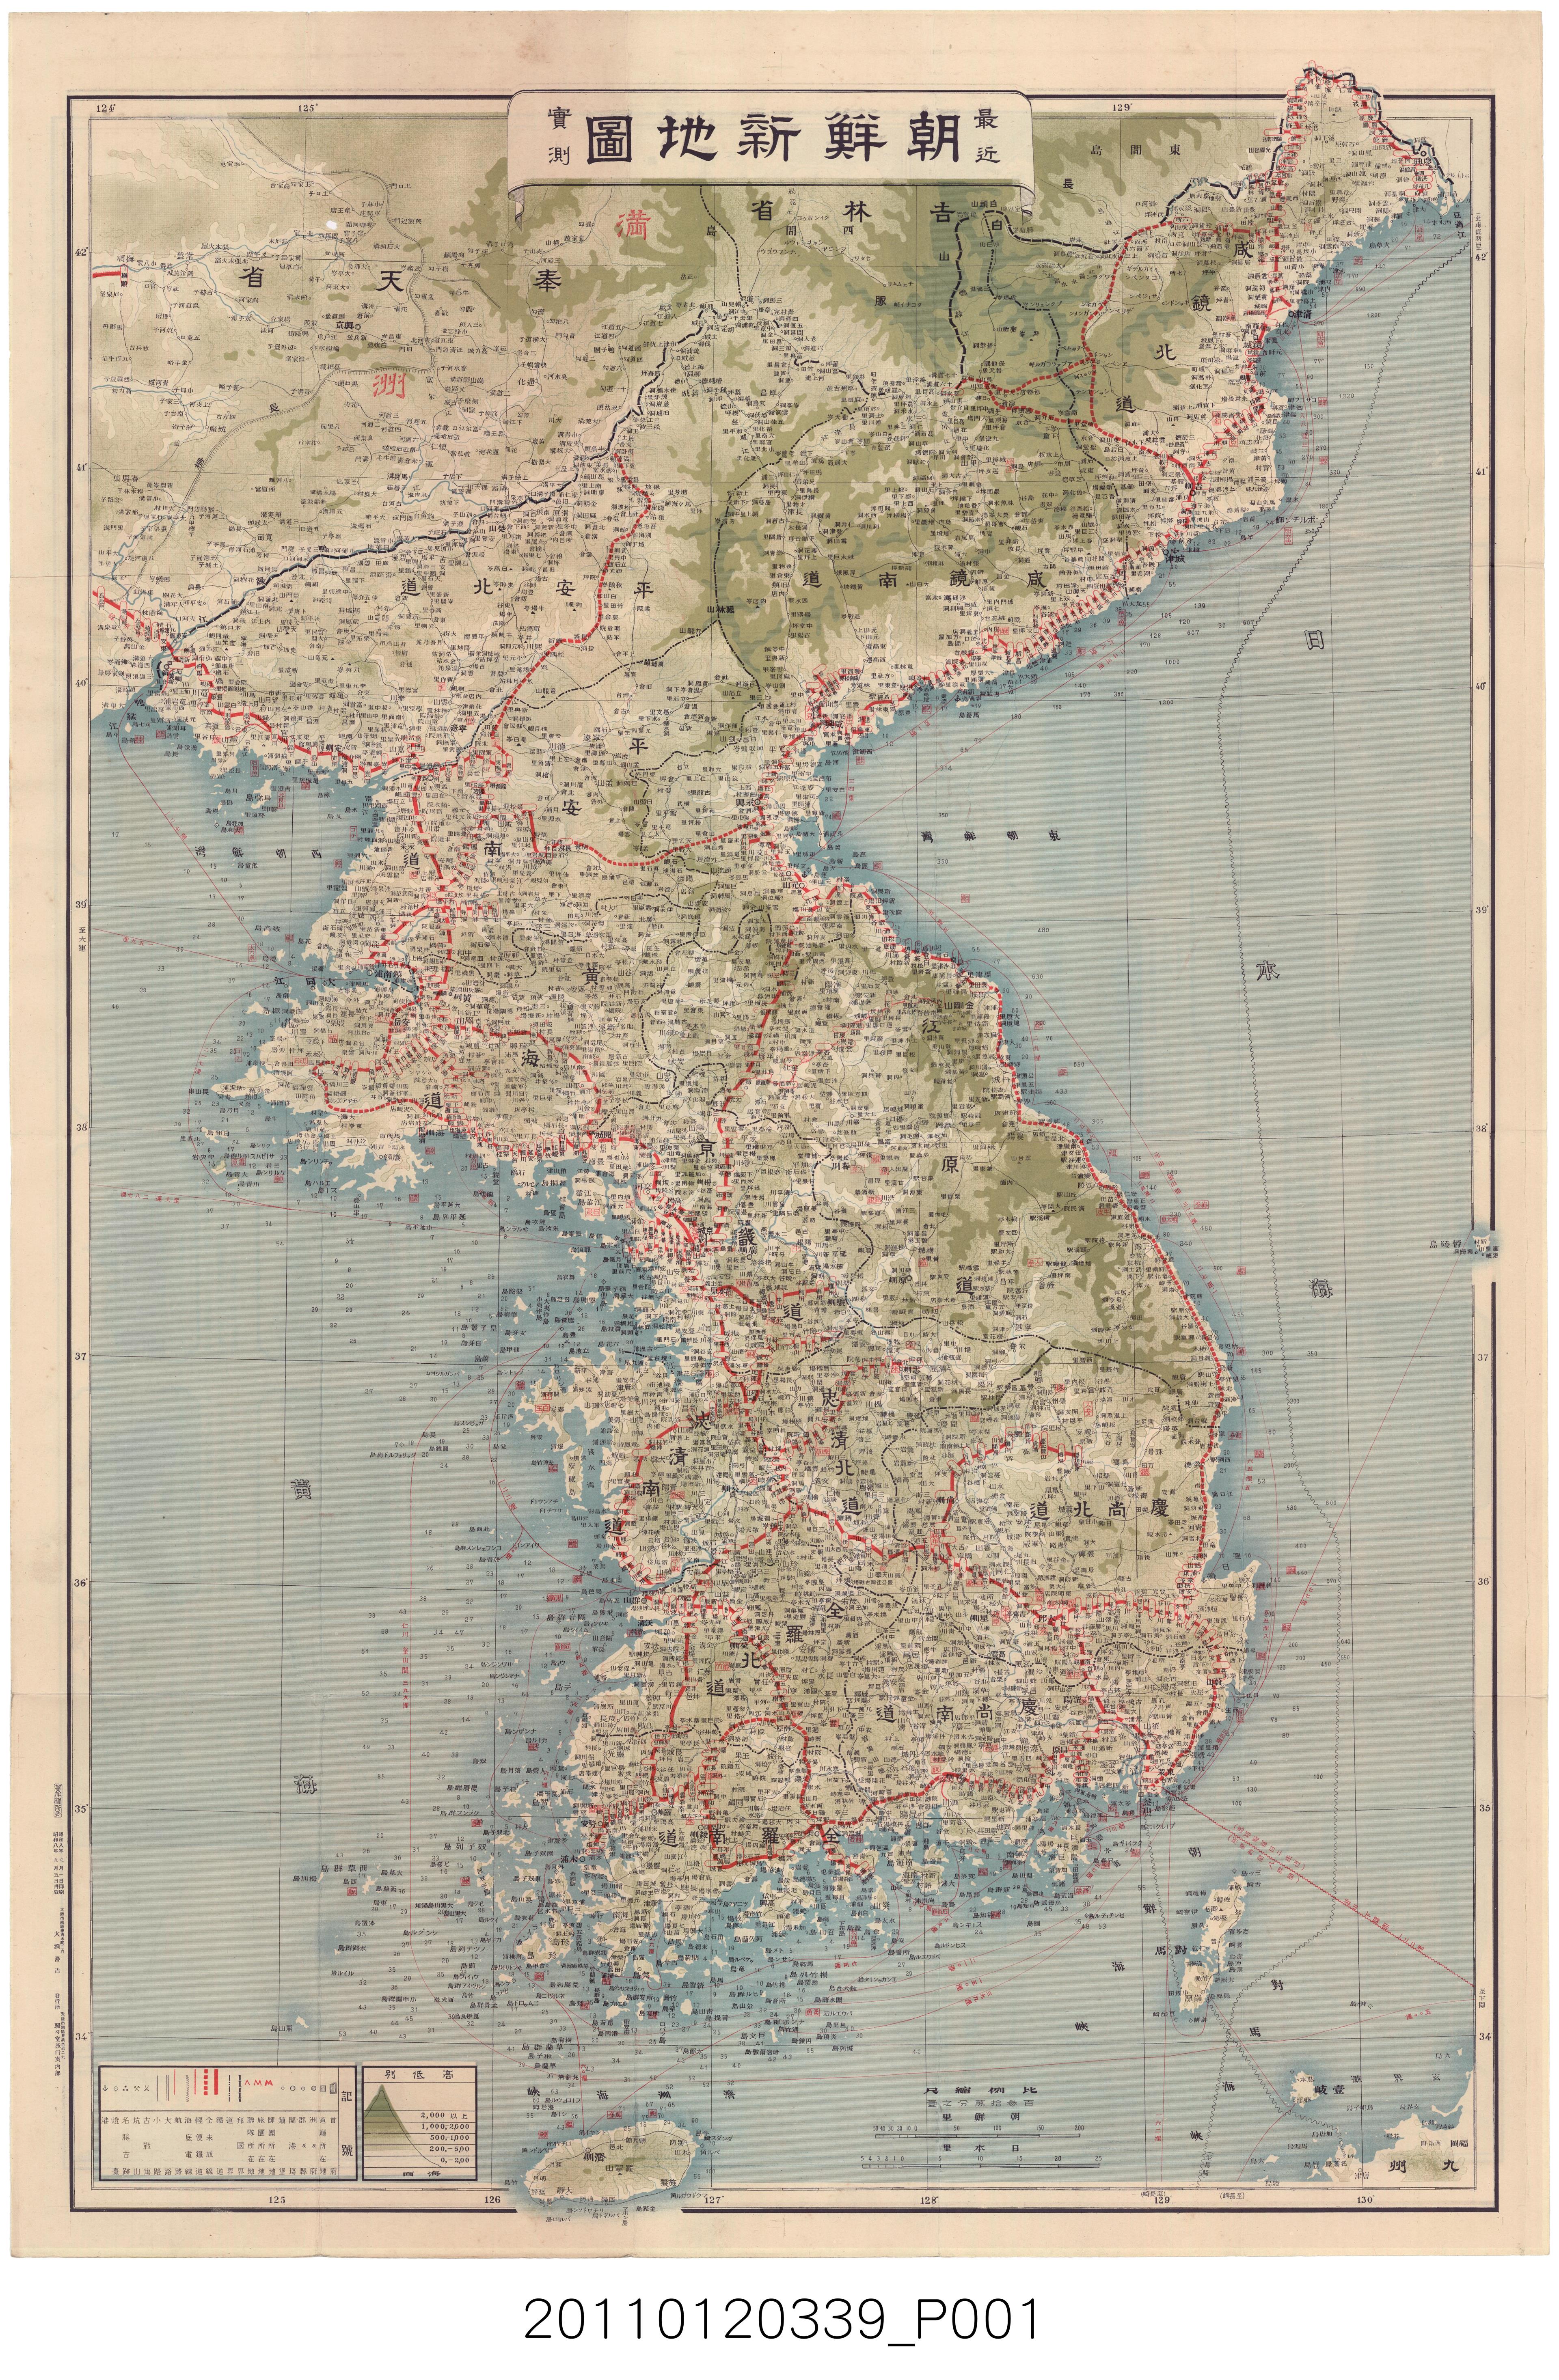 駸駸堂旅行案內部〈最近實測朝鮮新地圖〉 (共2張)